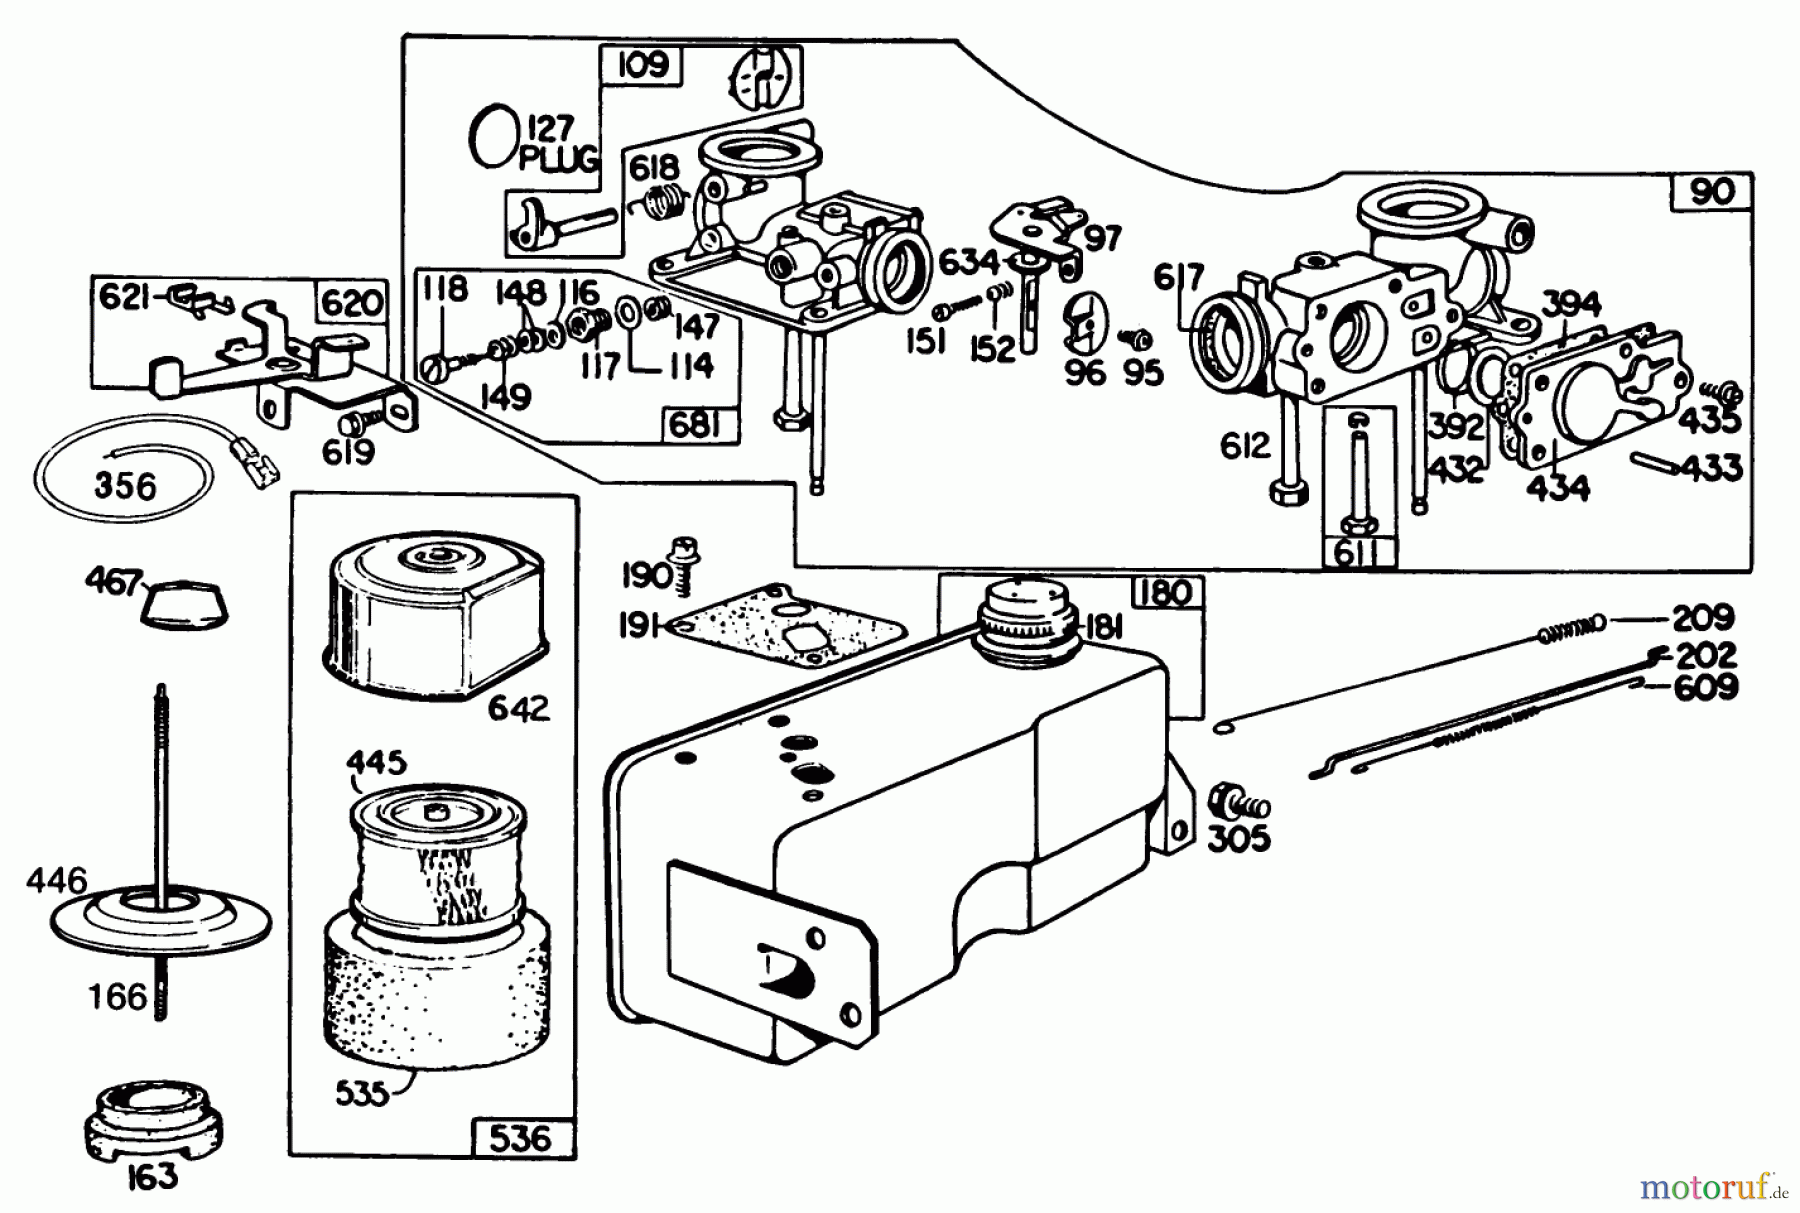  Toro Neu Mowers, Walk-Behind Seite 2 22020 - Toro Lawnmower, 1986 (6000001-6999999) ENGINE BRIGGS & STRATTON MODEL 131922-0163-01 #2